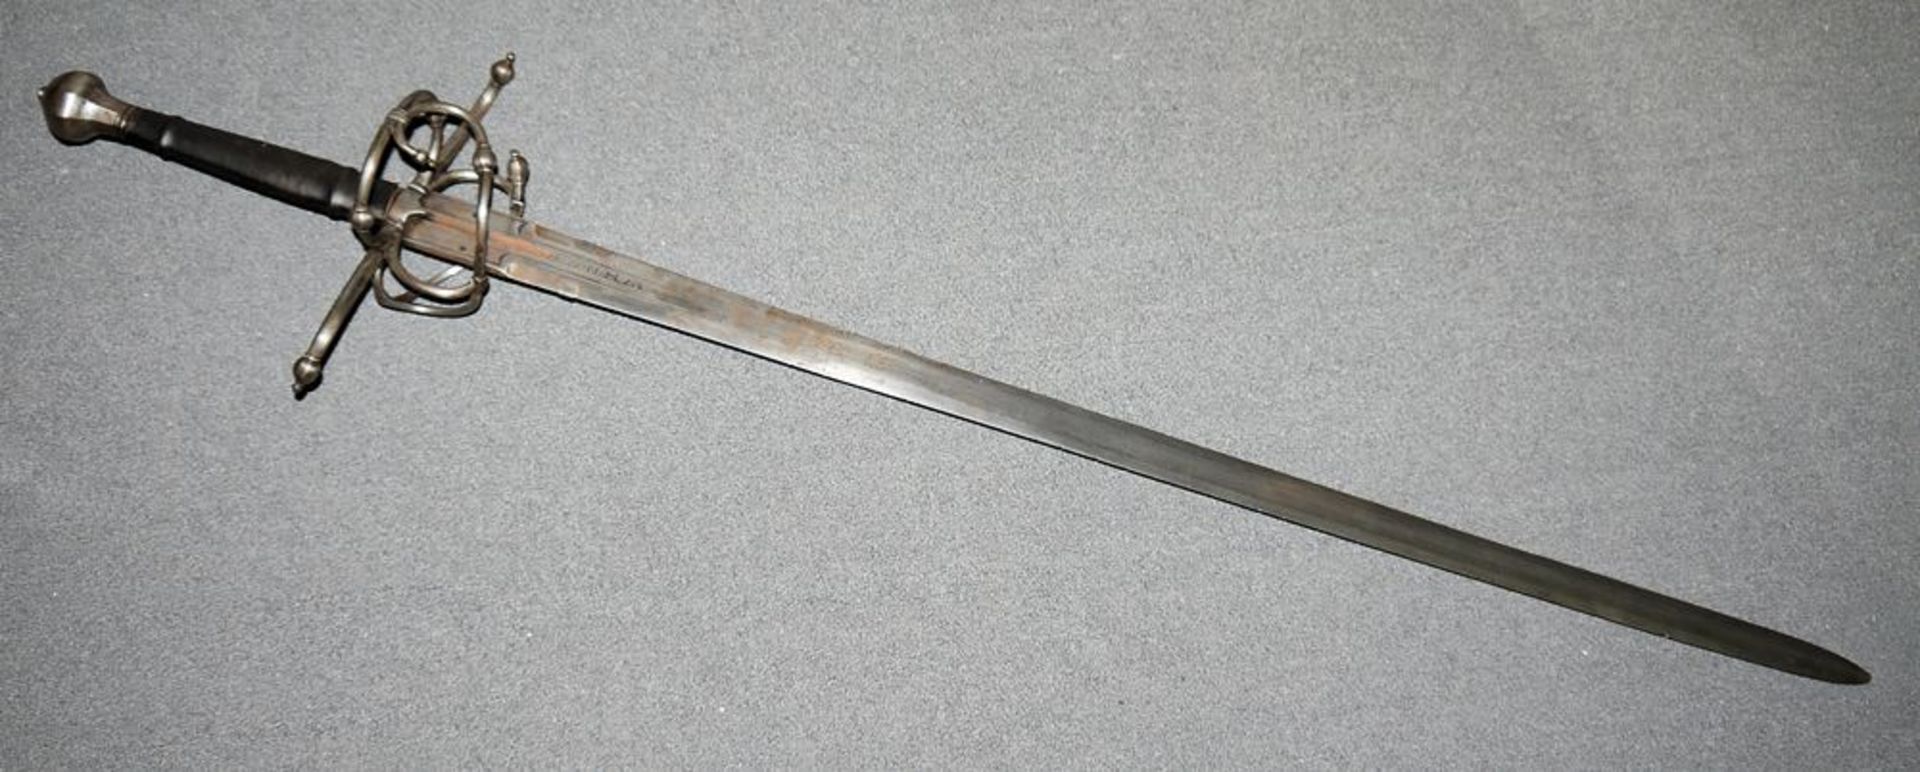 Qualitätvolles Beidhänder-Schwert des Historismus, wohl 18./19. Jh. - Image 2 of 5